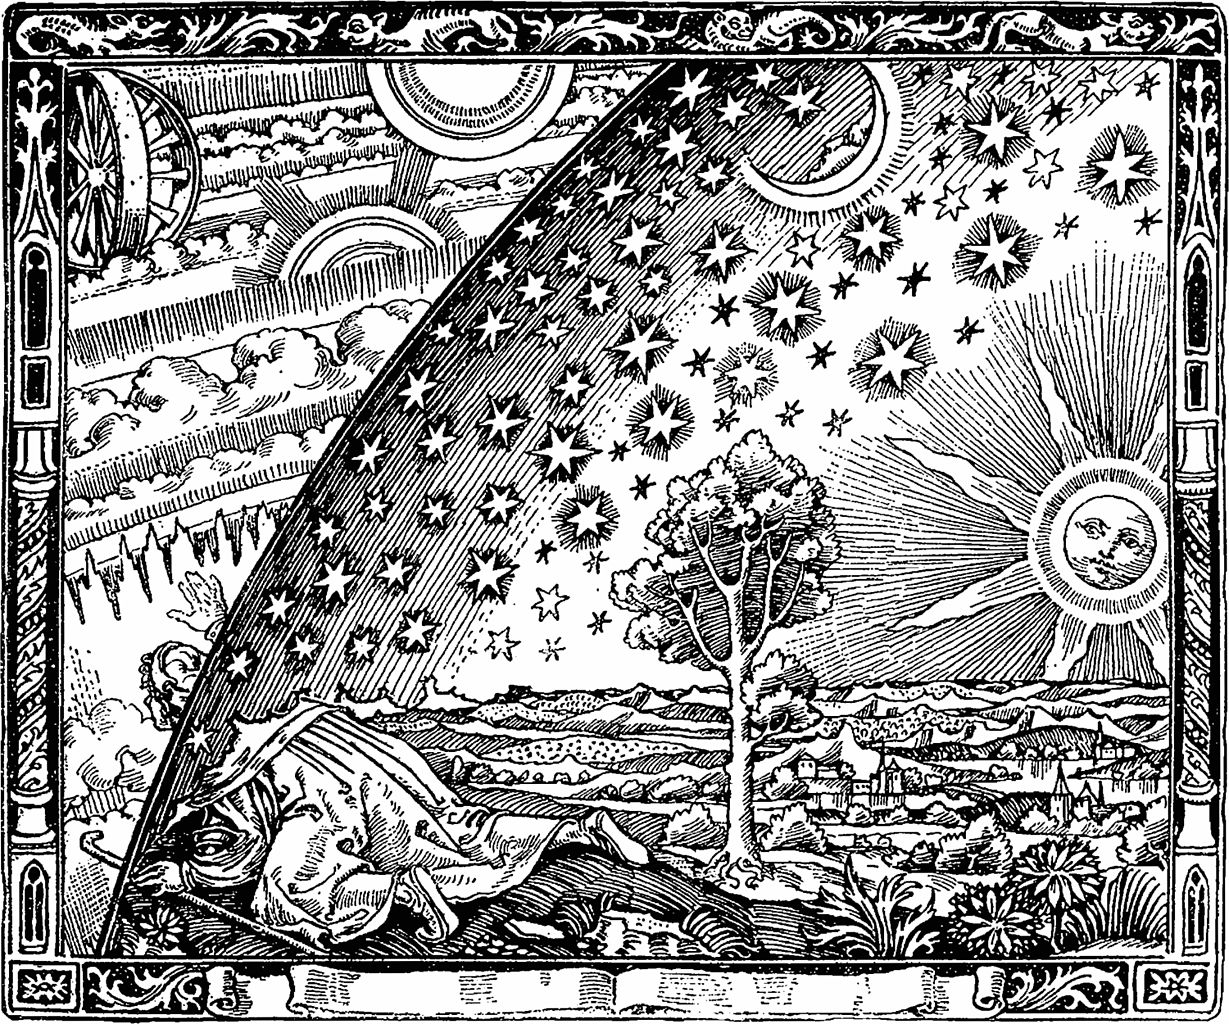 Der Naive Wanderer am Weltenrand, berühmter Holzschnitt von Camille Flammarion